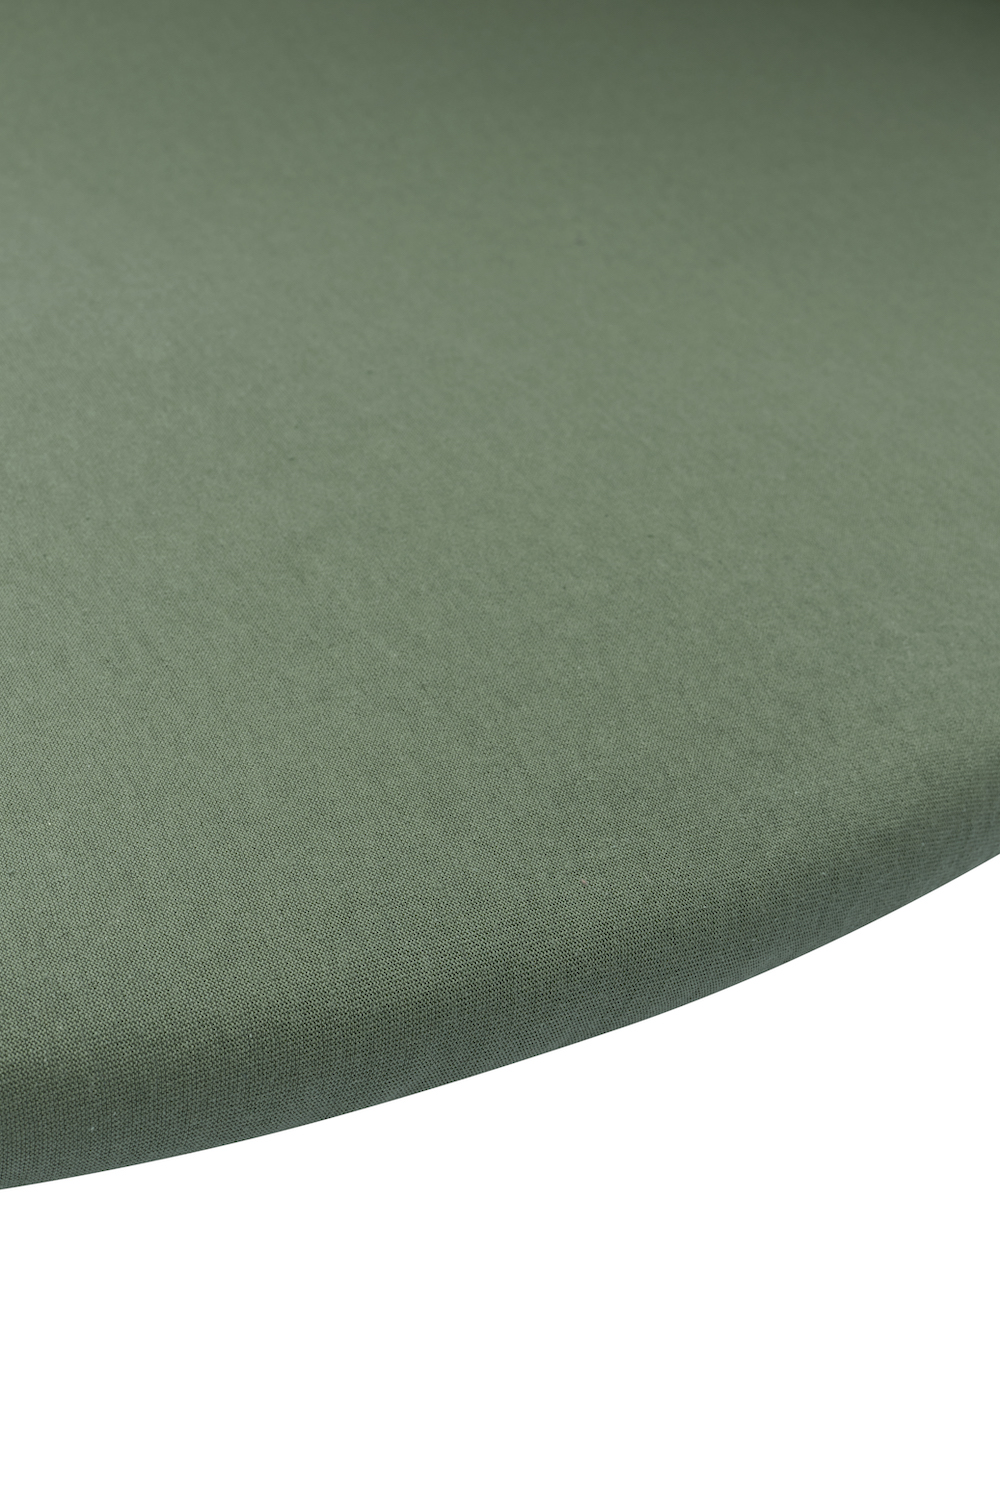 Fitted sheet playpen mattress Uni - forest green - Round 90/95cm